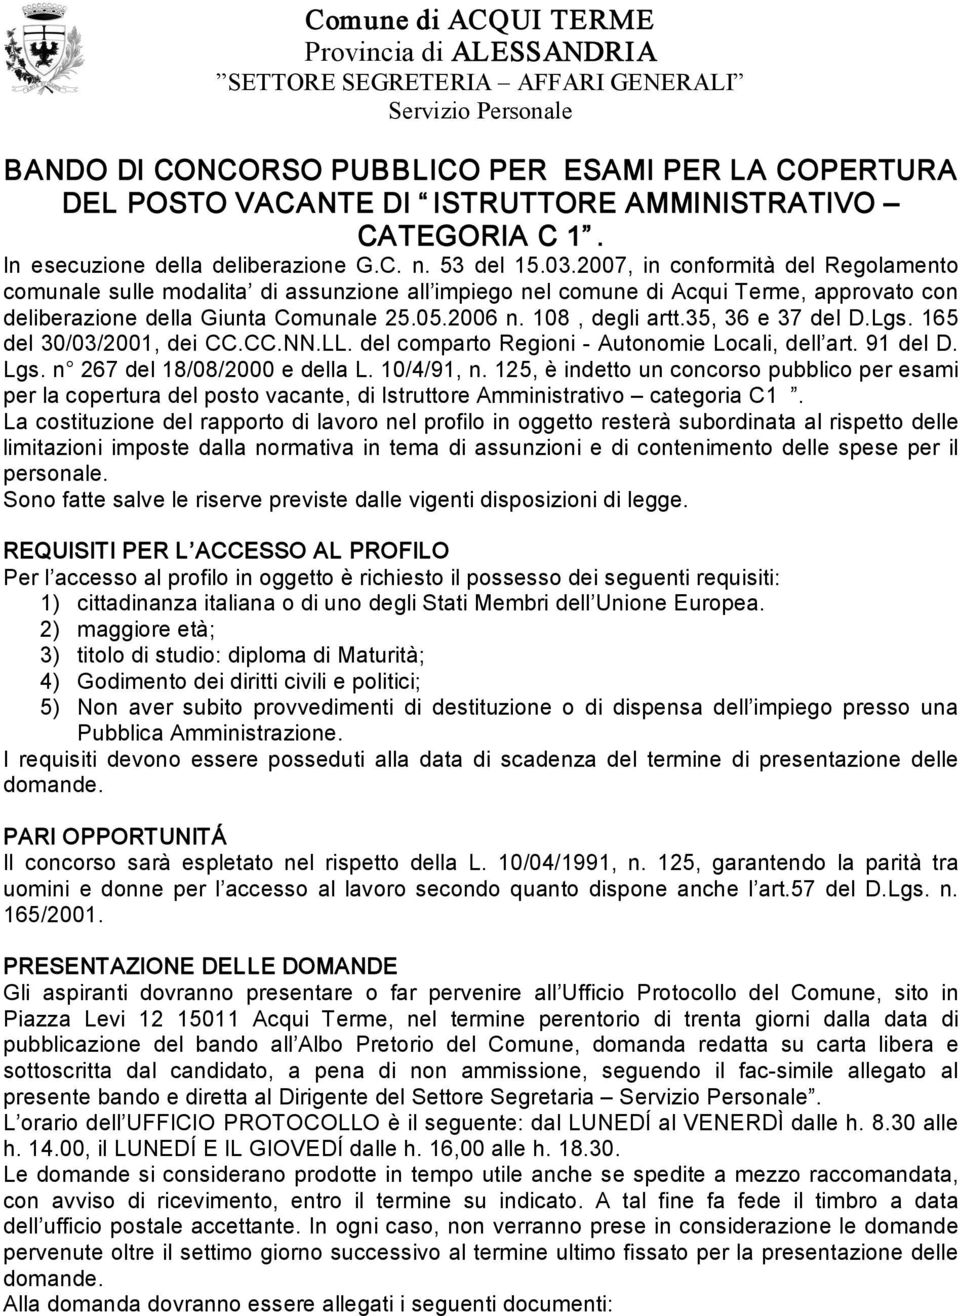 2007, in conformità del Regolamento comunale sulle modalita di assunzione all impiego nel comune di Acqui Terme, approvato con deliberazione della Giunta Comunale 25.05.2006 n. 108, degli artt.